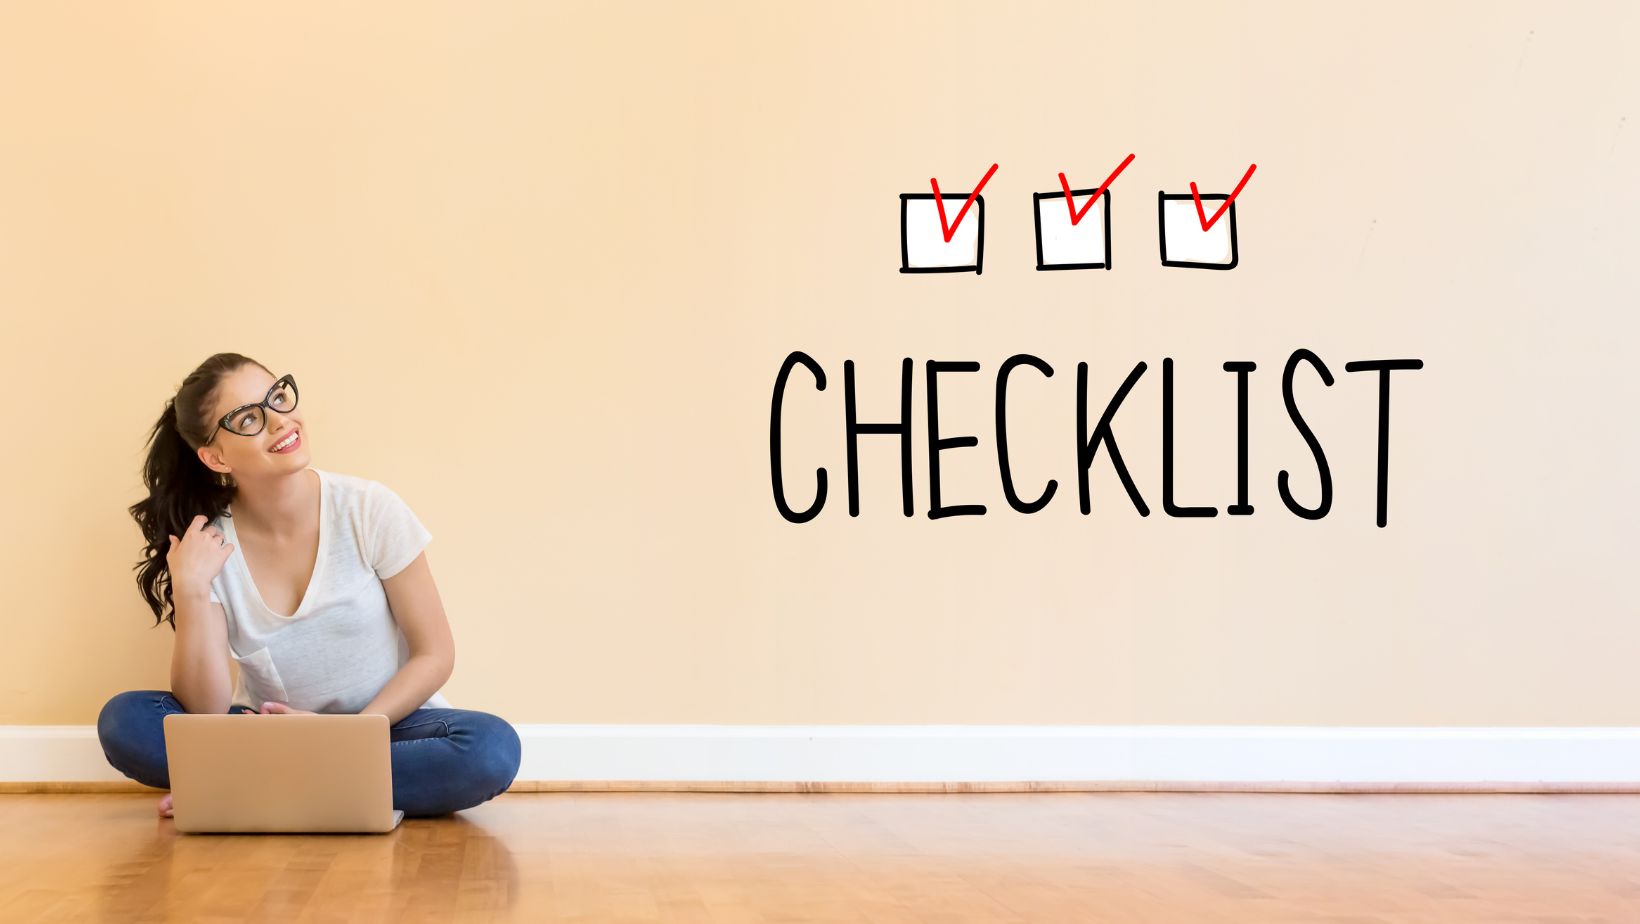 home organization checklist